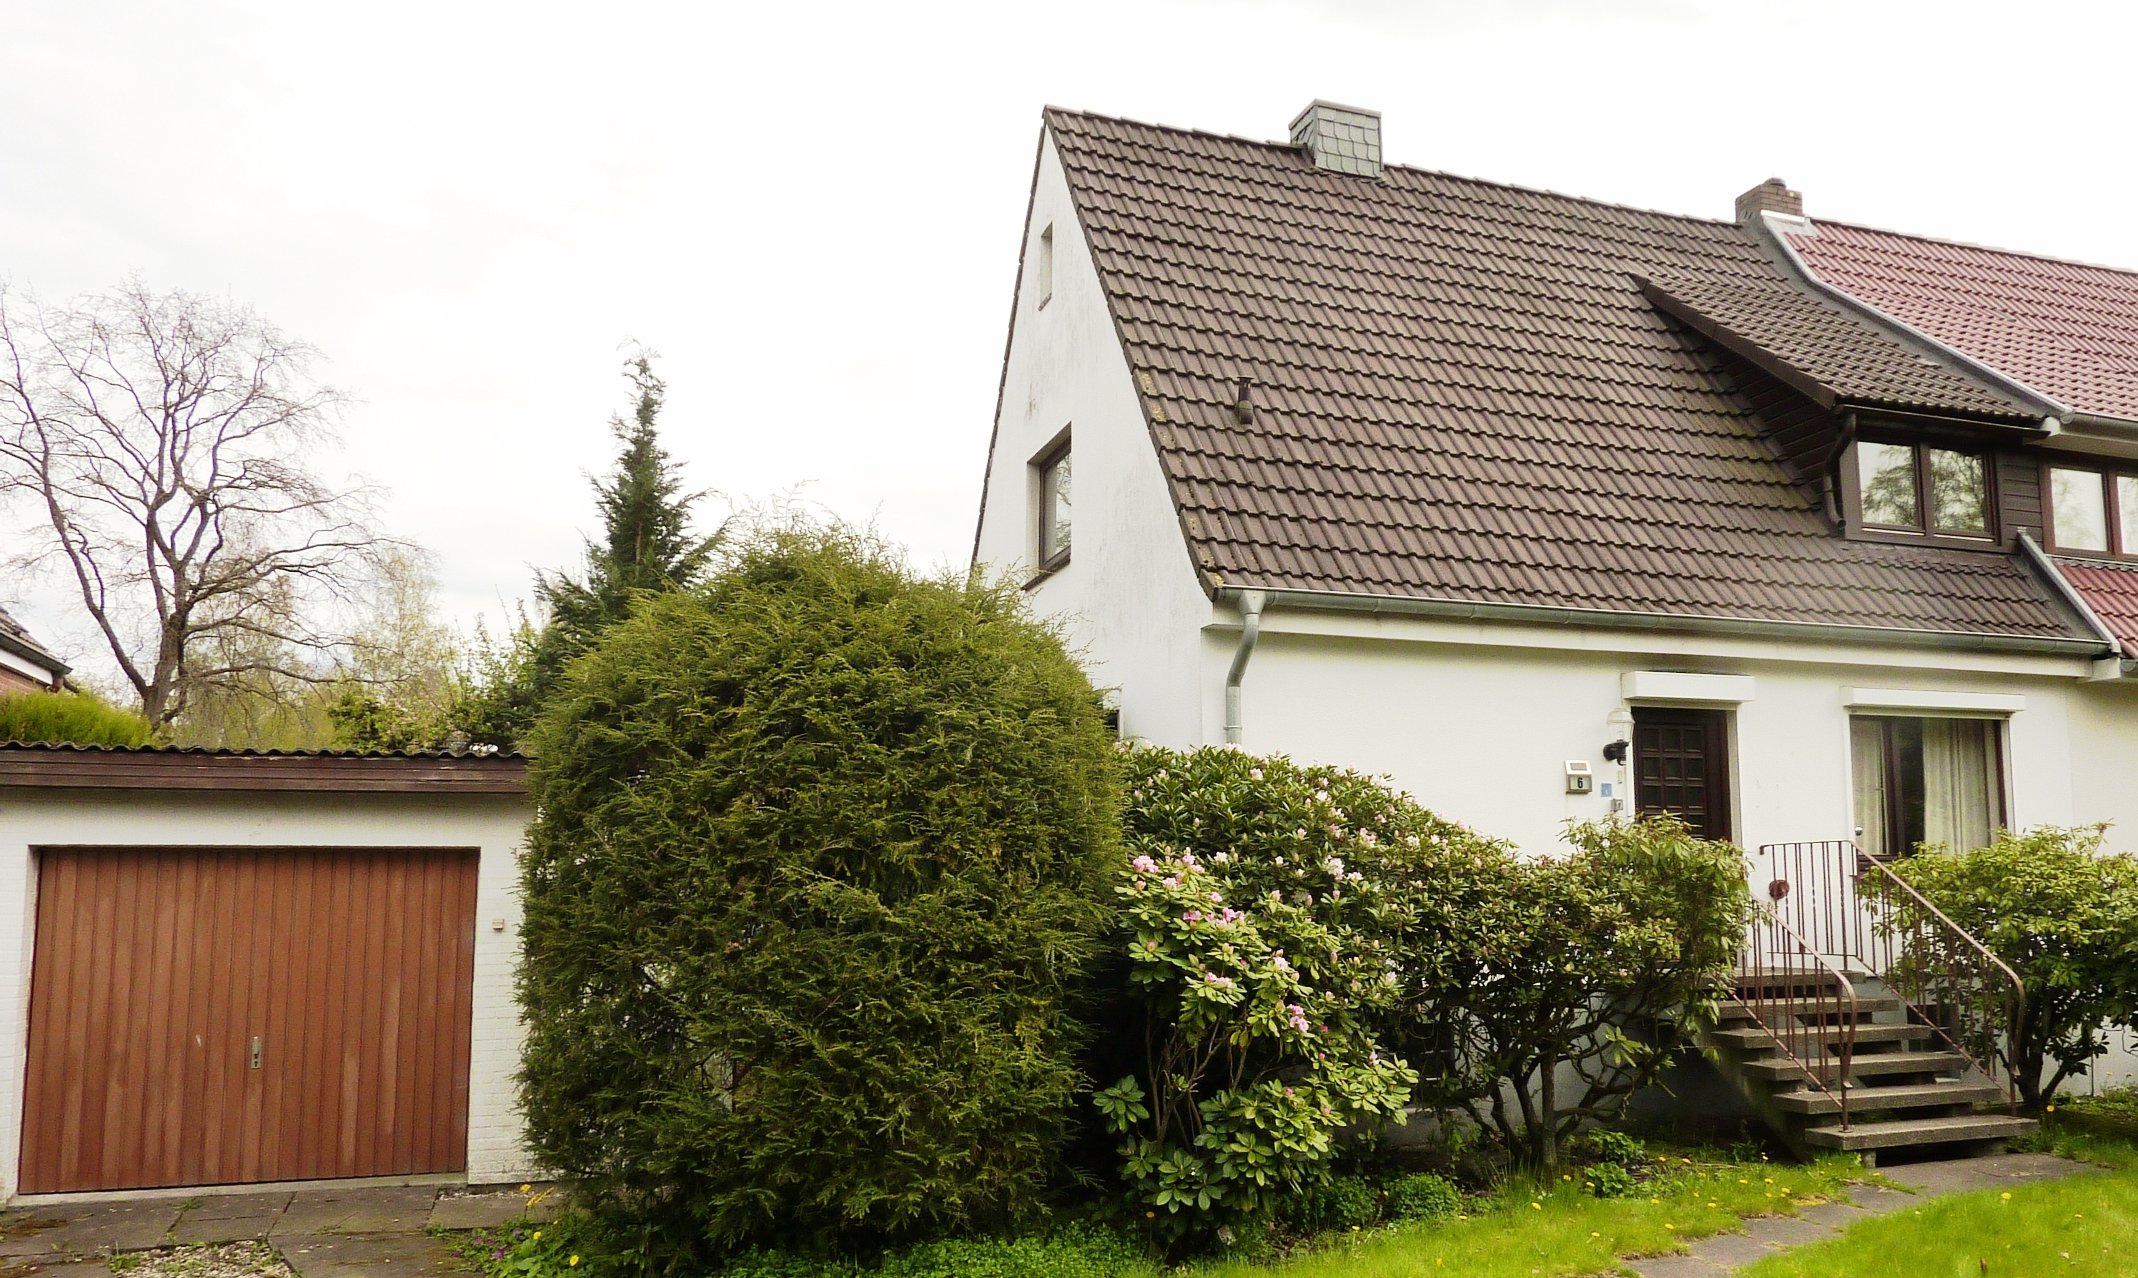 VERKAUFT – Gemütliche kleine Doppelhaushälfte mit Erweiterungspotential auf großem Gartengrundstück